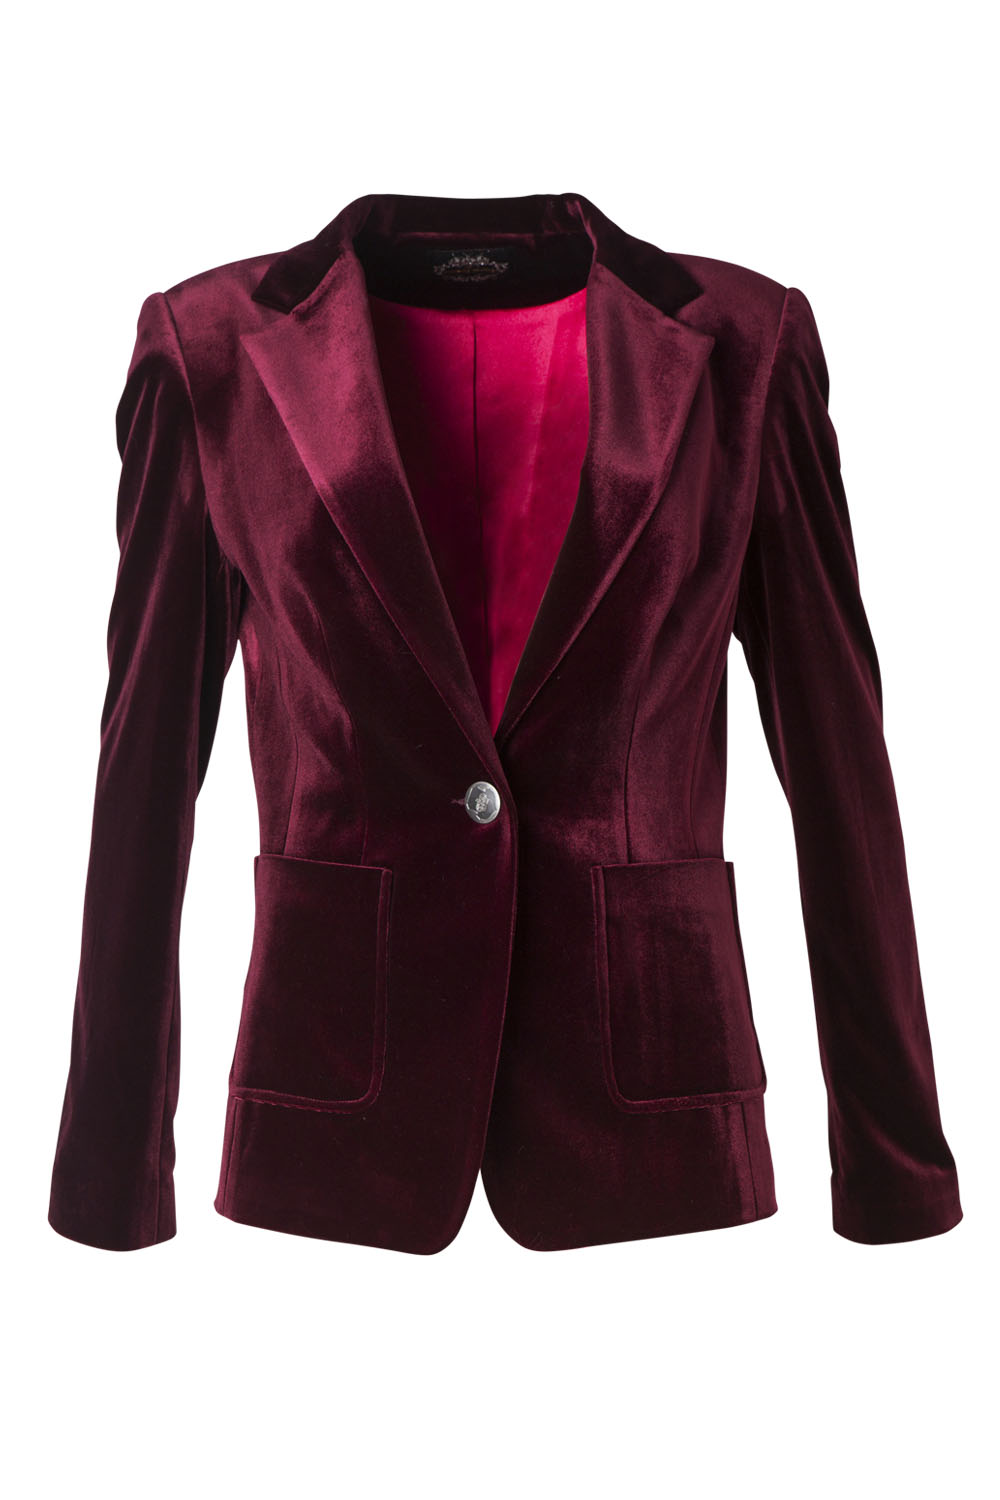 Jacket, $750, by Yvonne Bennetti.